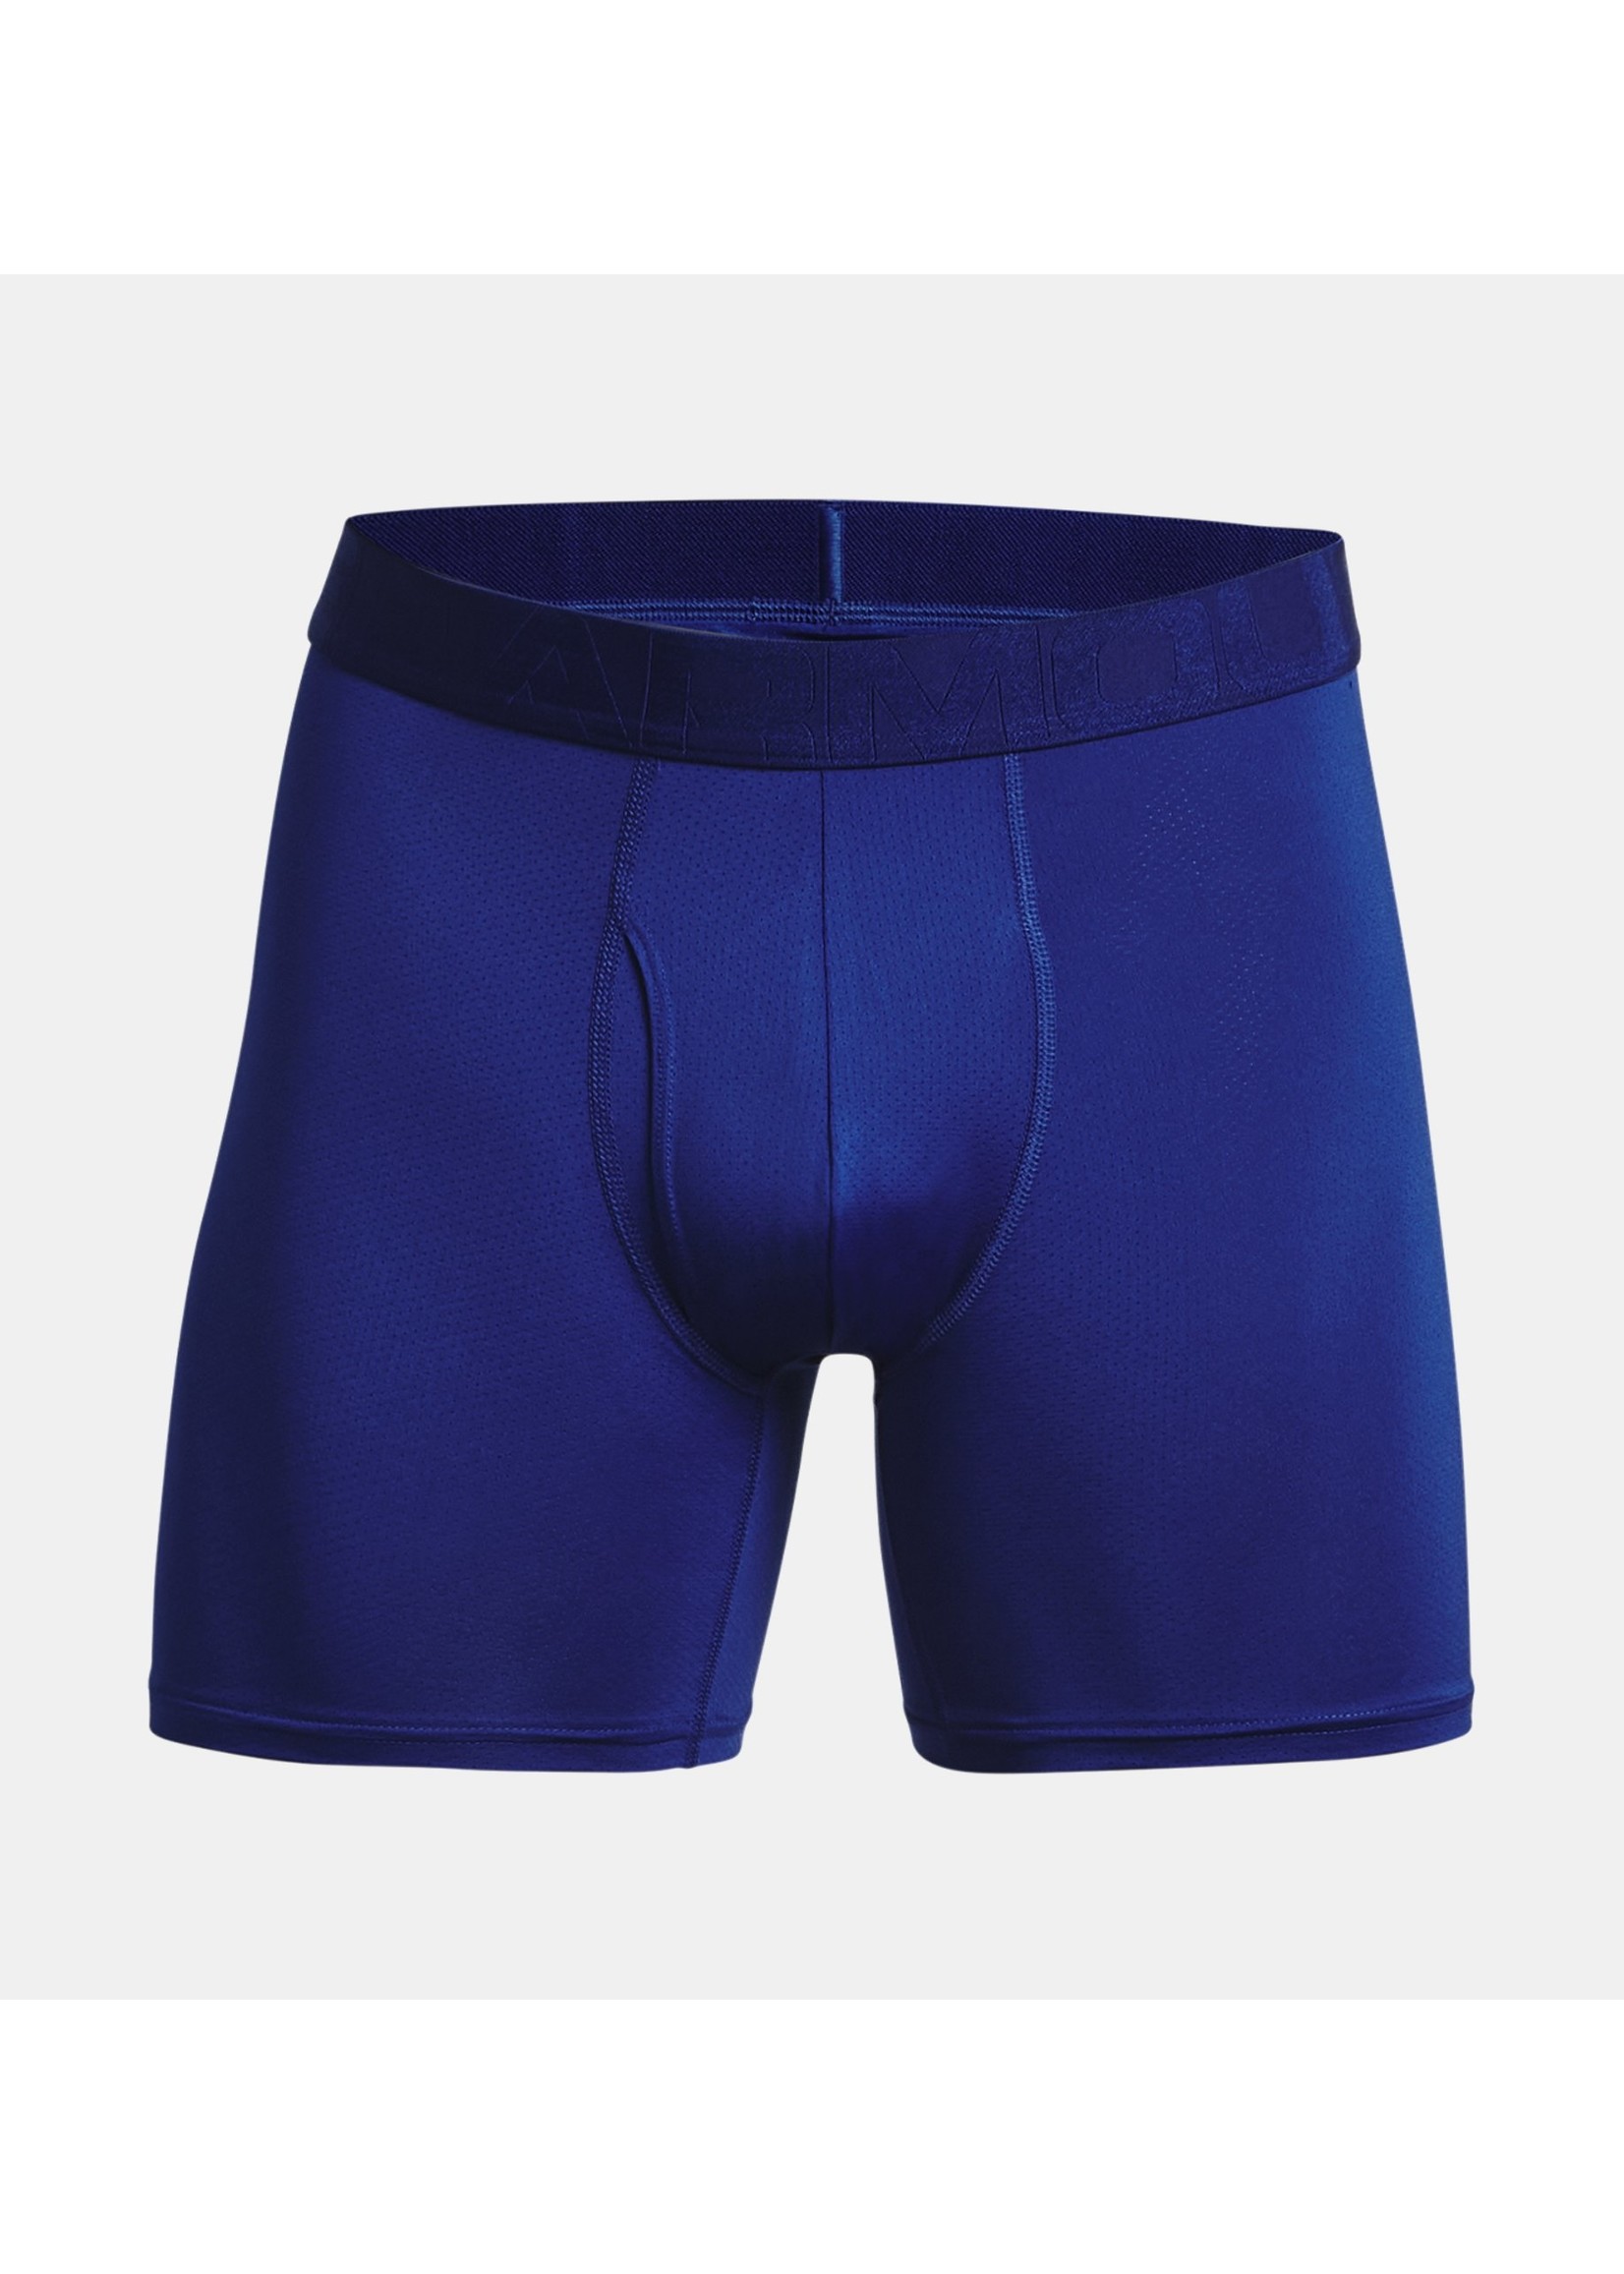 NIB Under Armour 2-Pack Mens Underwear 6 Boxer Briefs Blue Gray XXL